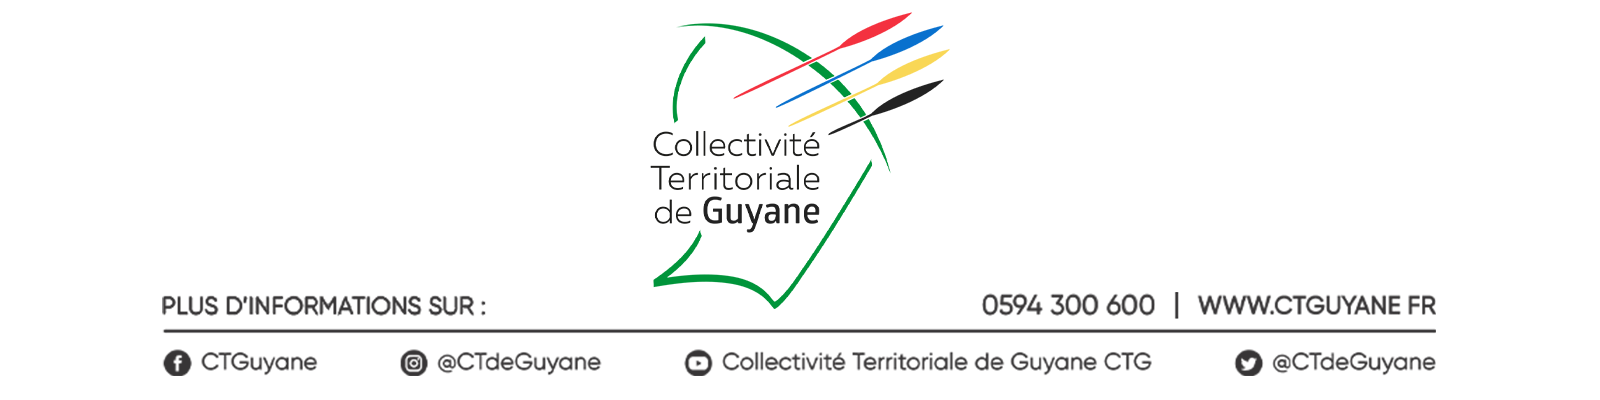 S'inscrire à la Lettre d'Information de la Collectivité Territoriale de Guyane